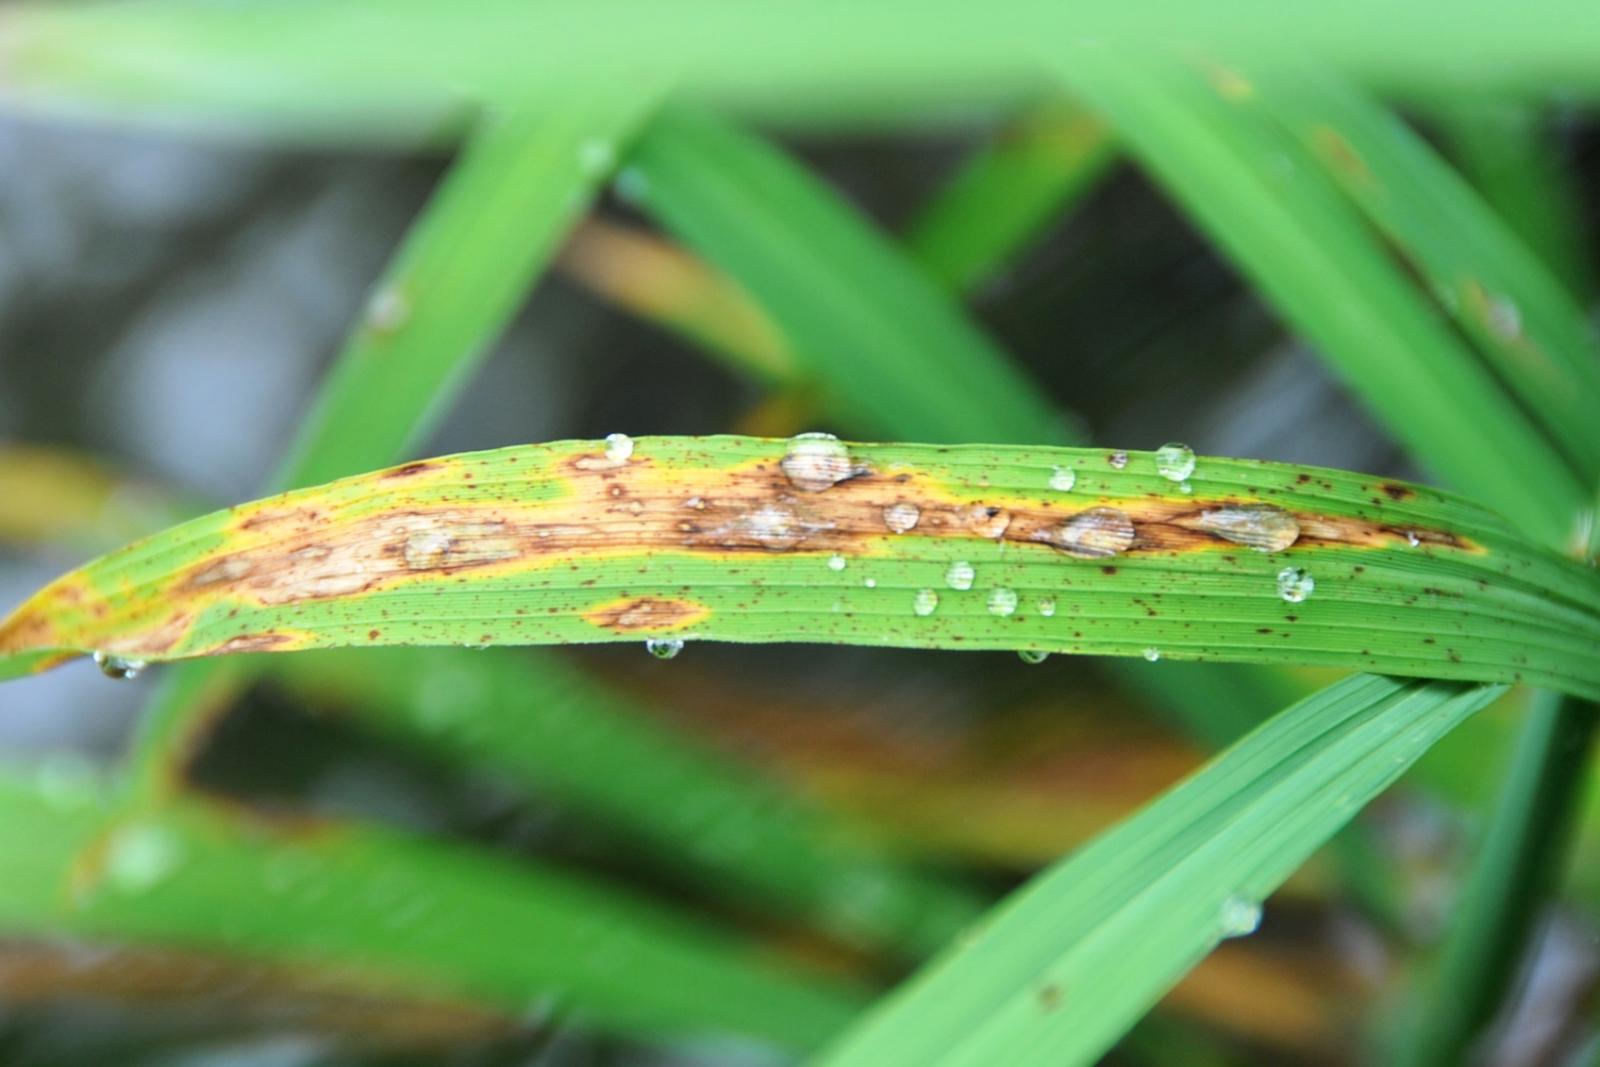 殘留葉片的露水會助長葉稻熱病的危害